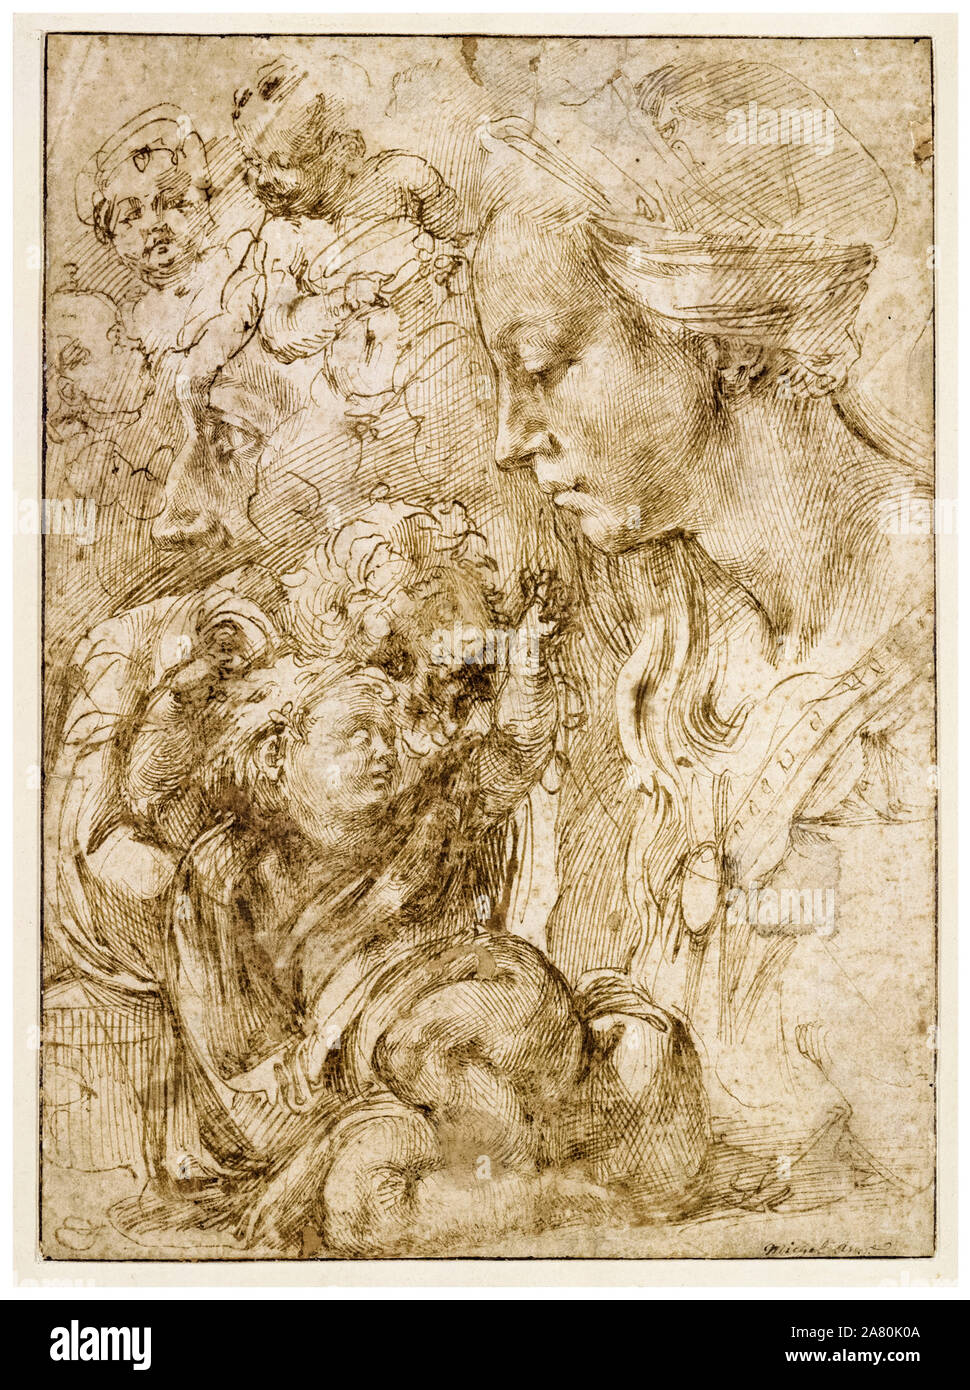 Michelangelo Buonarroti, estudios de Sagrada Familia, dibujo, 1505 Foto de stock